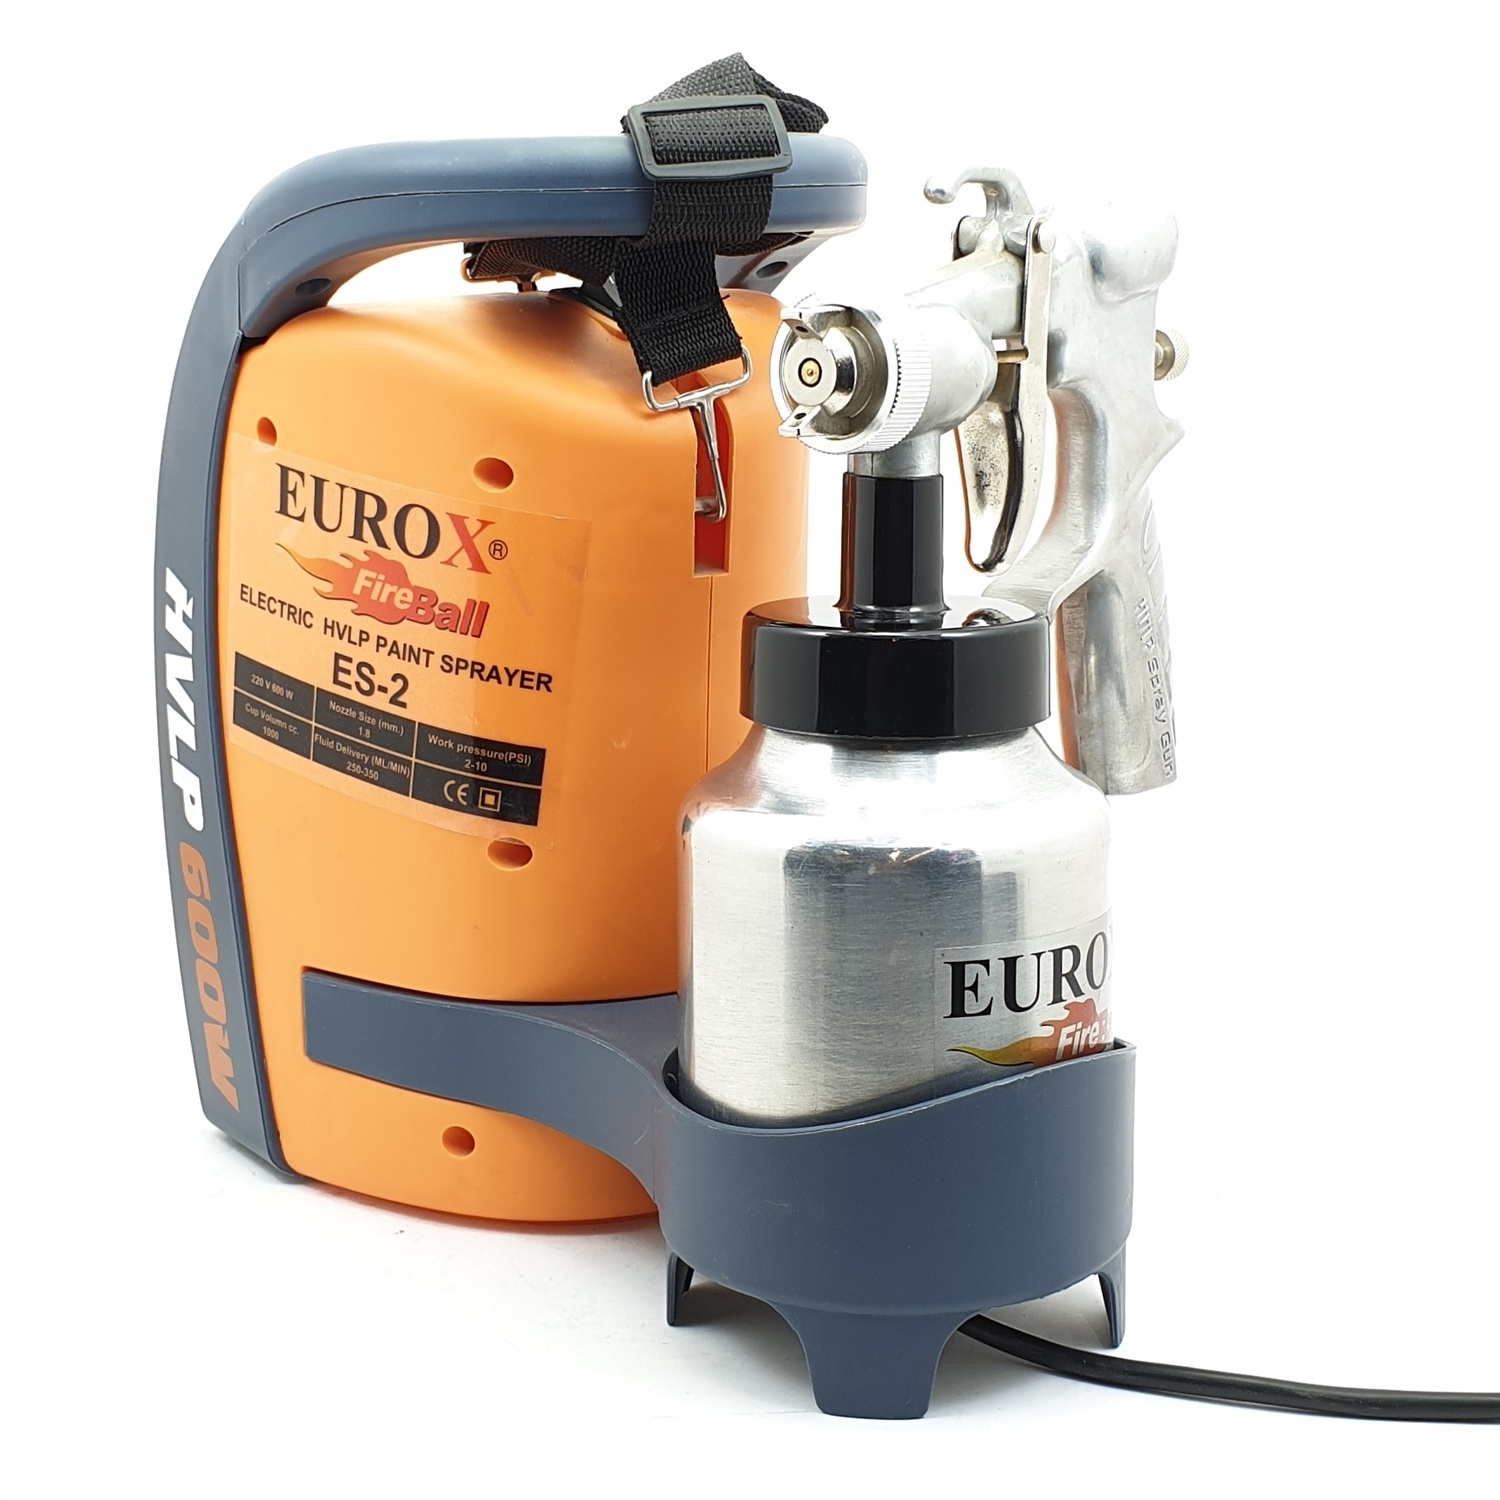 EUROX กาพ่นสีไฟฟ้า รุ่น ES-2 (ถ้วย 1 ลิตร)